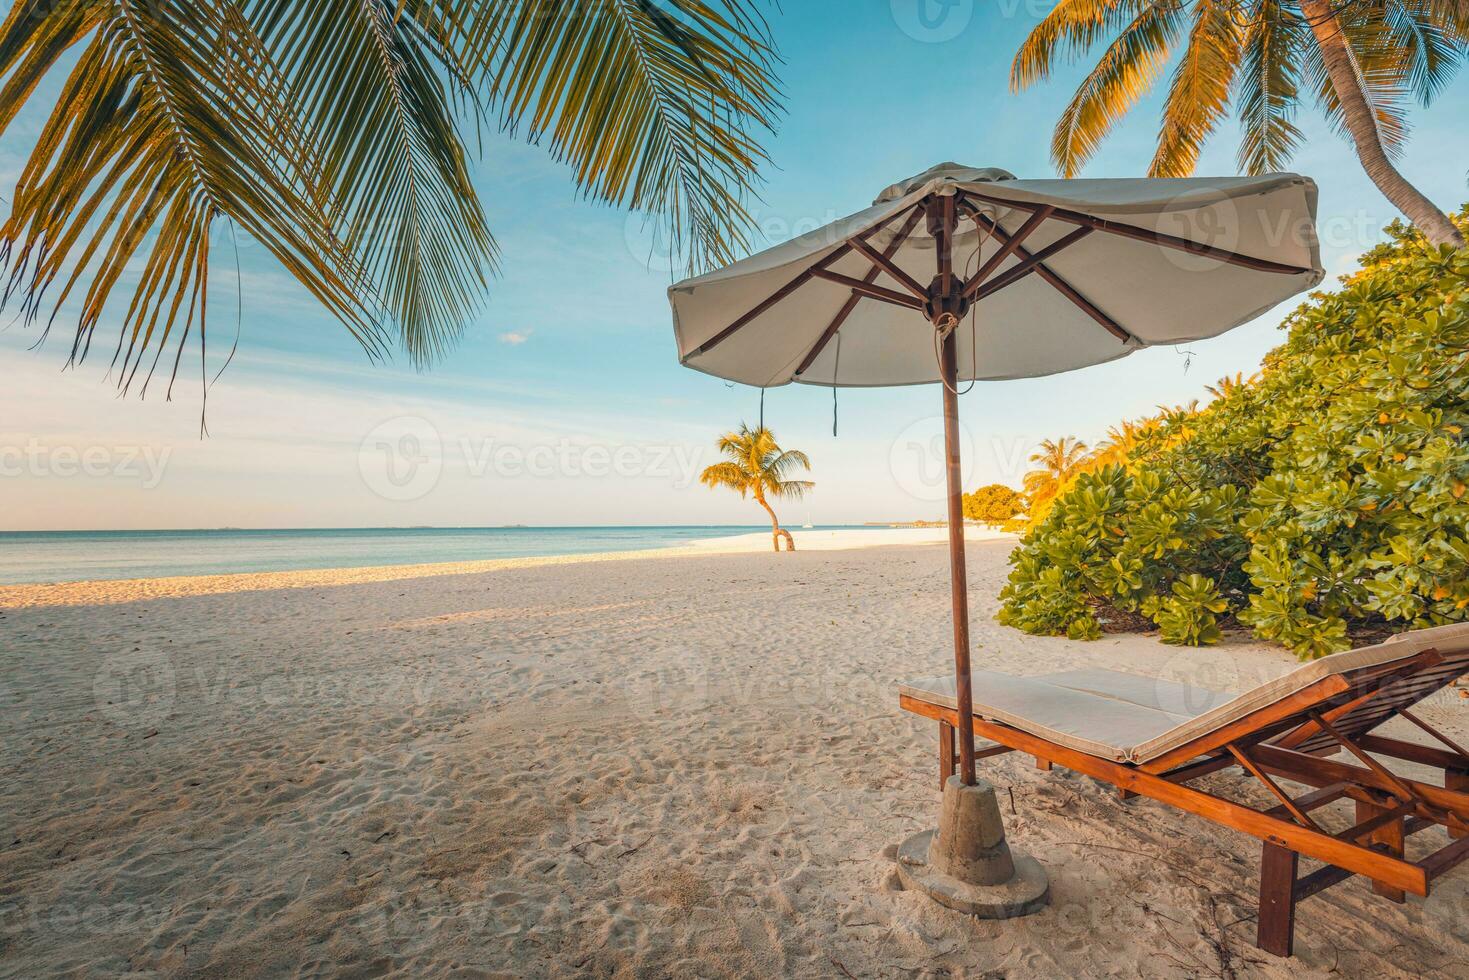 linda bandeira de praia tropical. areia branca e palmeiras de coco viajam turismo amplo conceito de fundo panorama. paisagem de praia incrível. cenário maravilhoso da praia, folhas de palmeira e espreguiçadeiras com vista para o mar foto